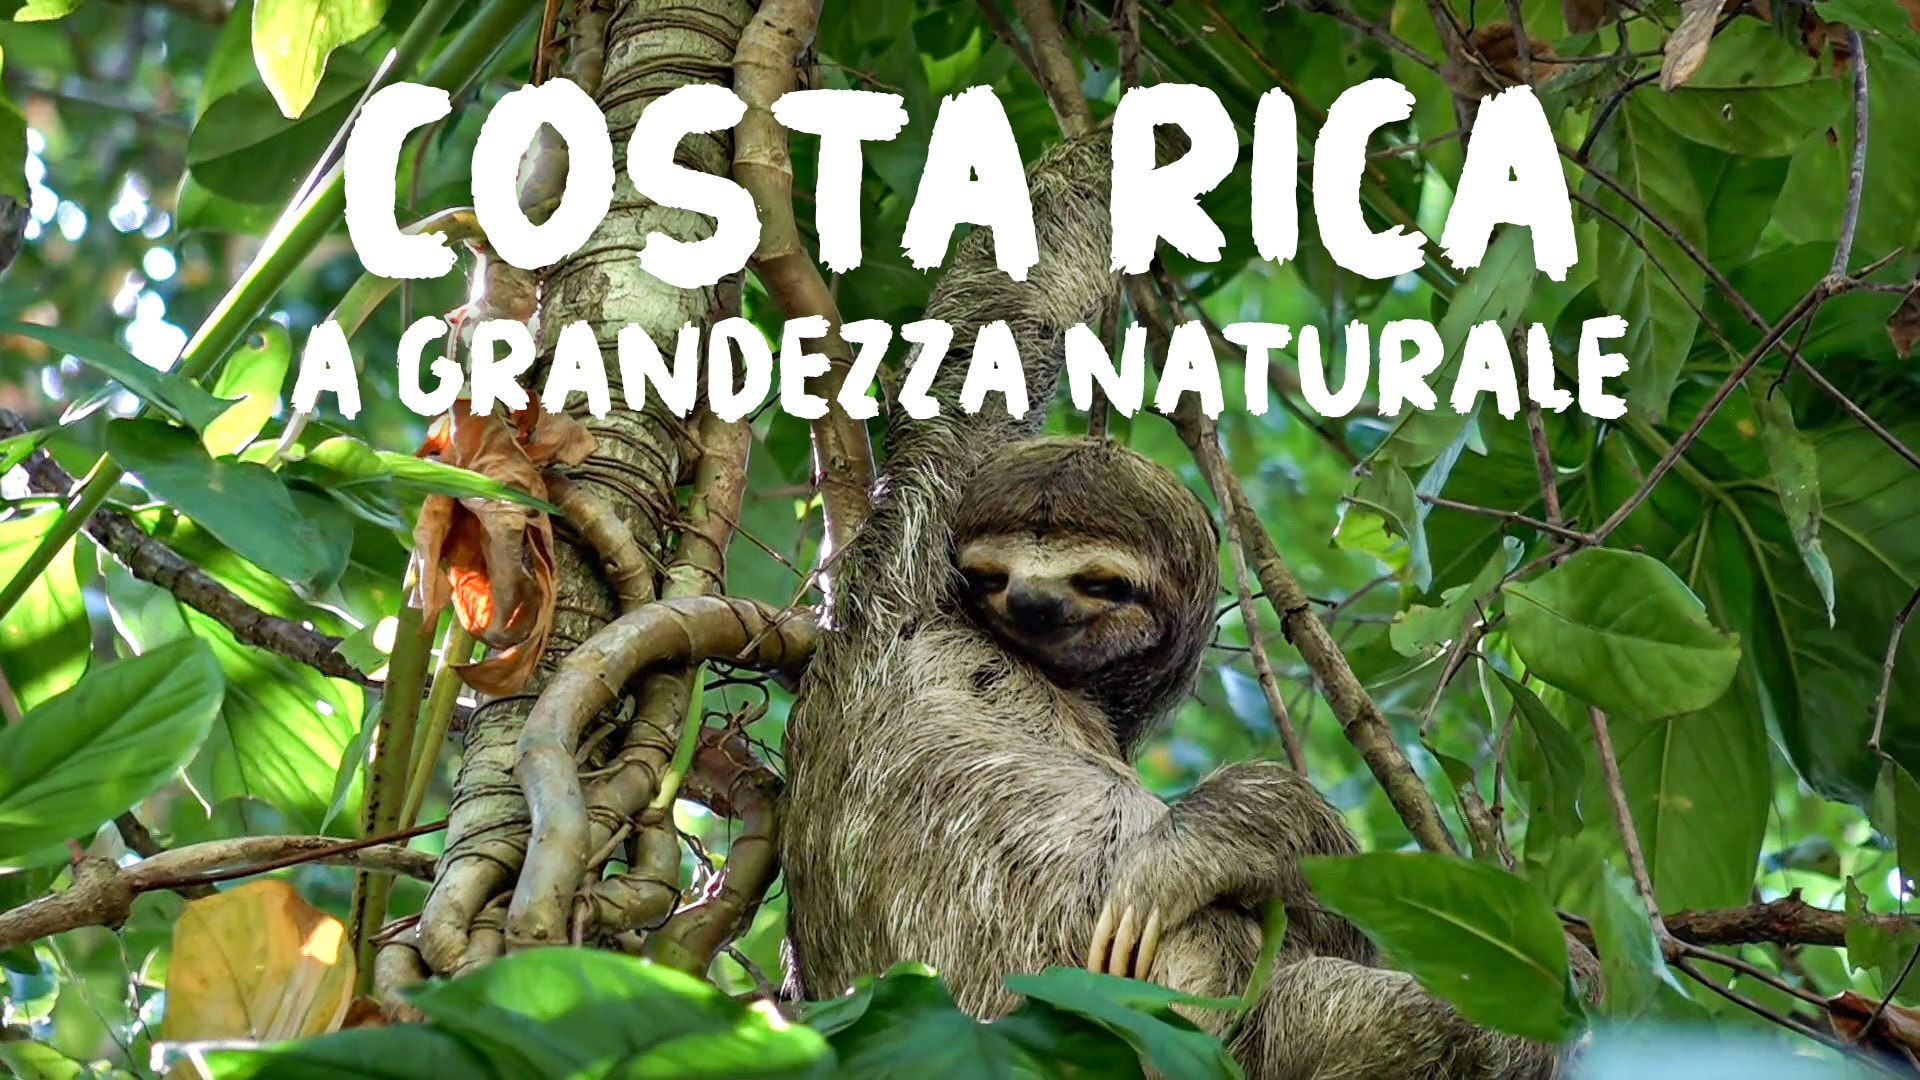 Costa Rica a grandezza naturale